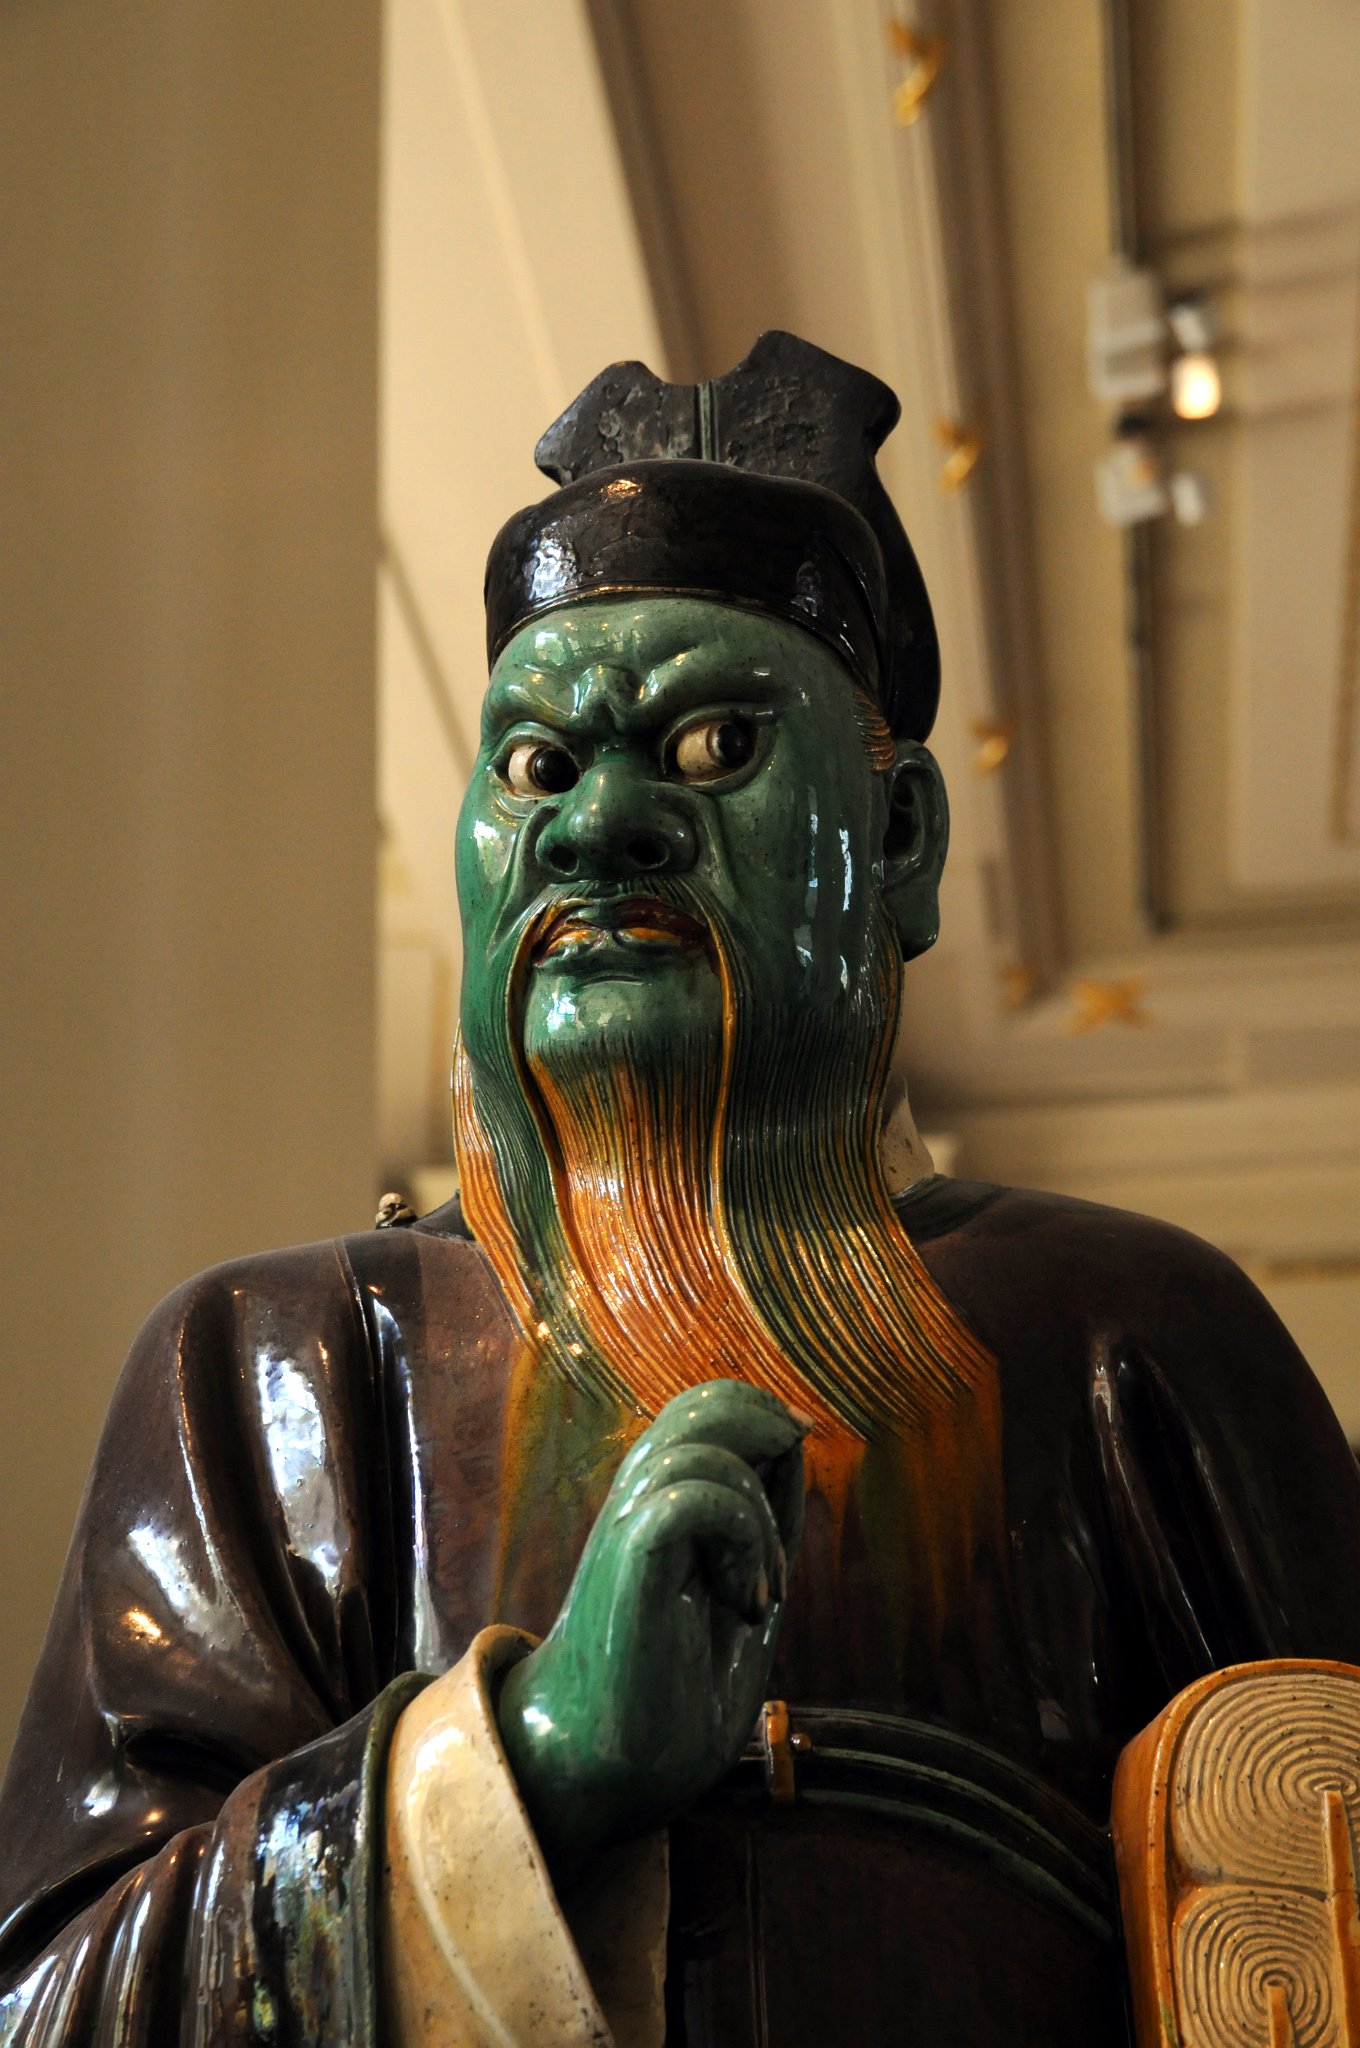 DSC_5952_2.jpg - Kameninová figura v barvě lilkové, zelené a okrové, glazovaná. Dynastie Ming, 16. století našeho letopočtu.Víra v peklo přišla do Číny s buddhismem v začátku 1.tisíciletí našeho letopočtu. Od konce dynastie Tang byly výjevy z podsvětí bežné. Tato figura soudce drží pod levou paží záznamy o zlých skutcích.